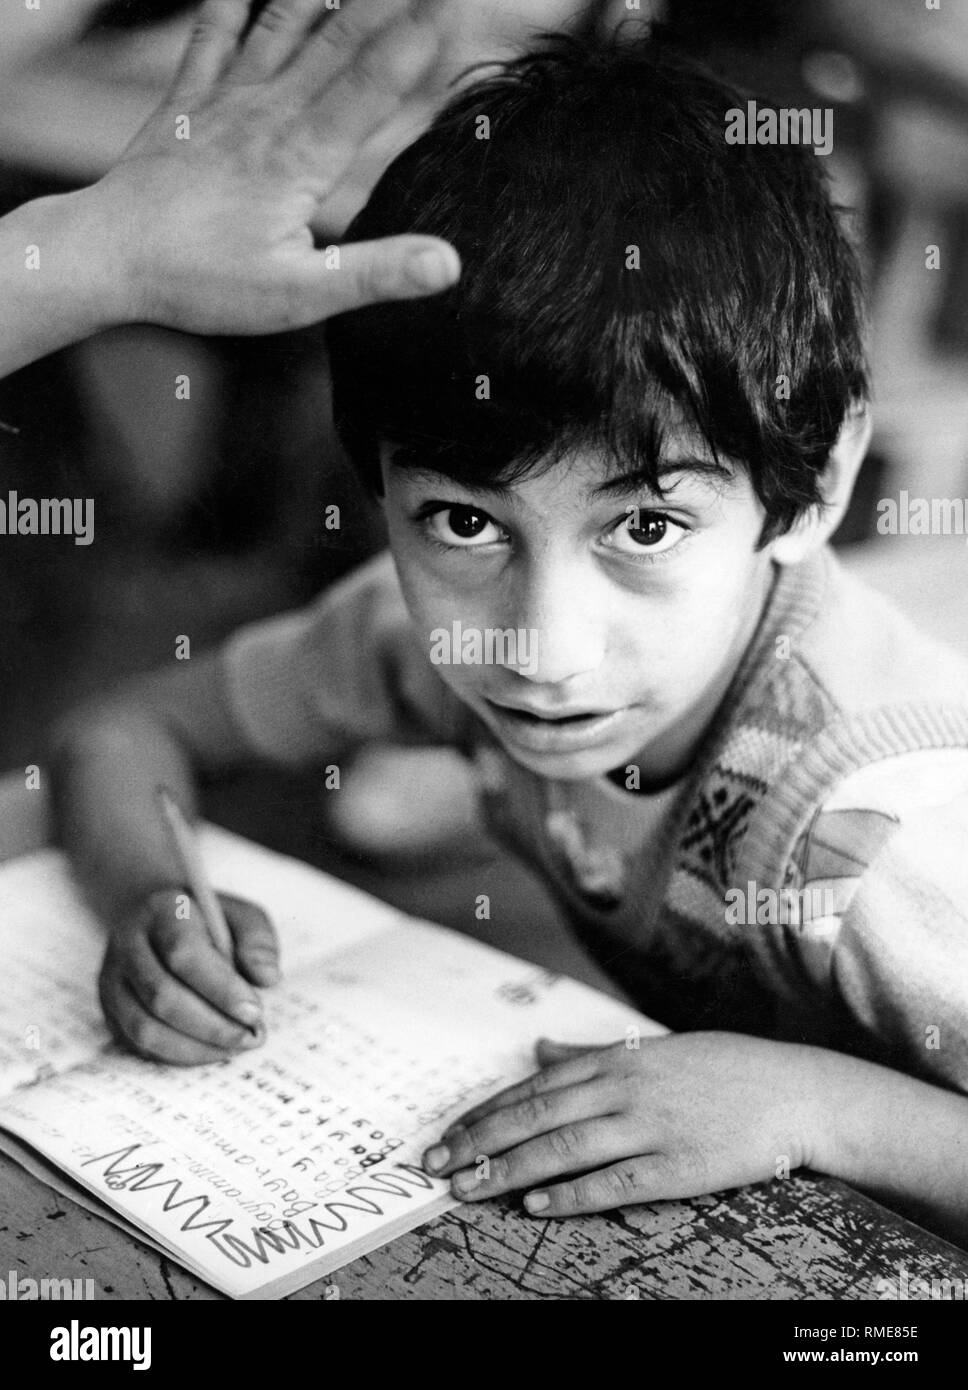 Ein Kind mit türkischem Migrationshintergrund in der Schule. Stockfoto